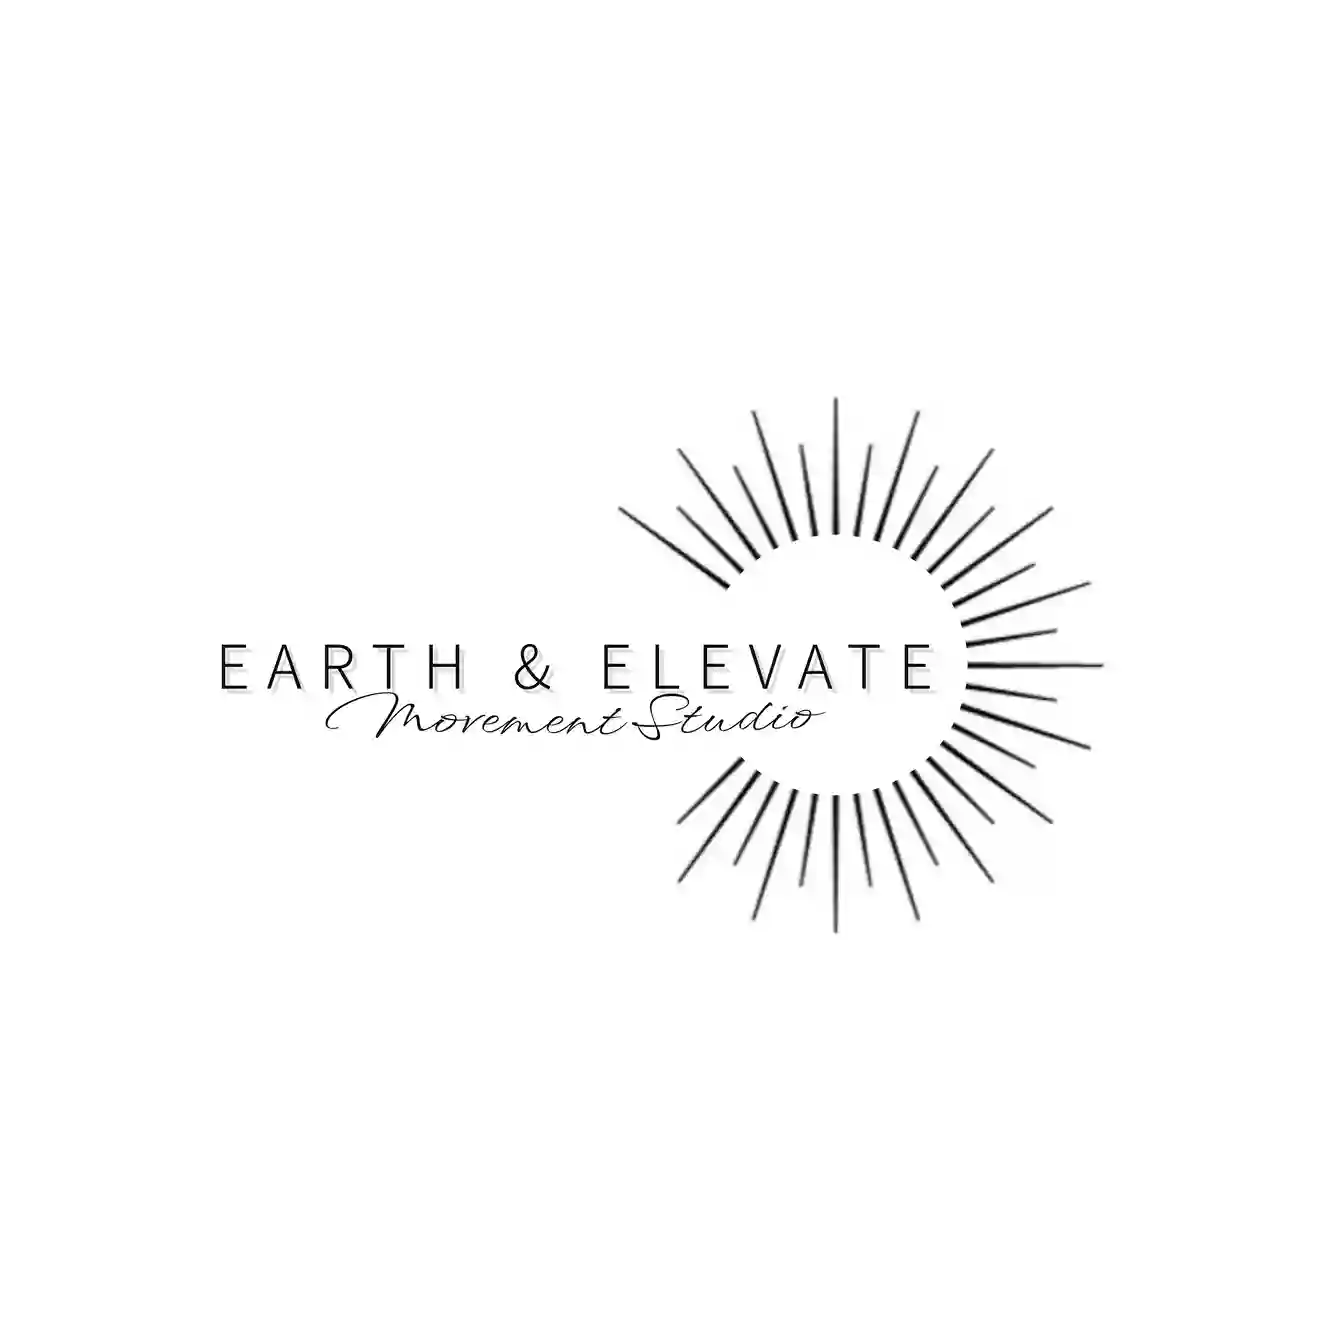 Earth & Elevate Movement Studio